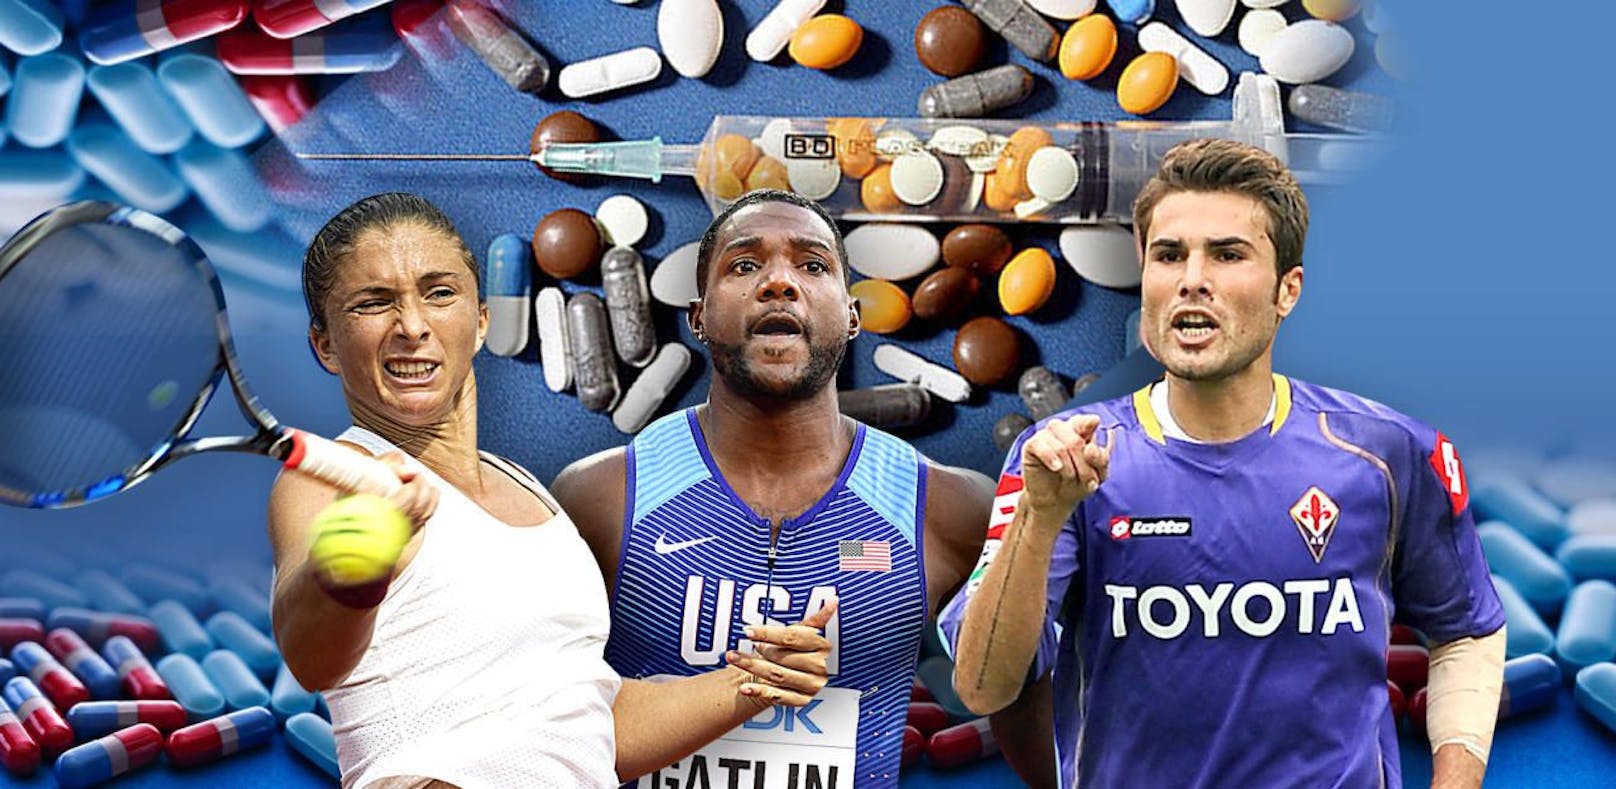 Die dümmsten Ausreden der Doping-Geschichte